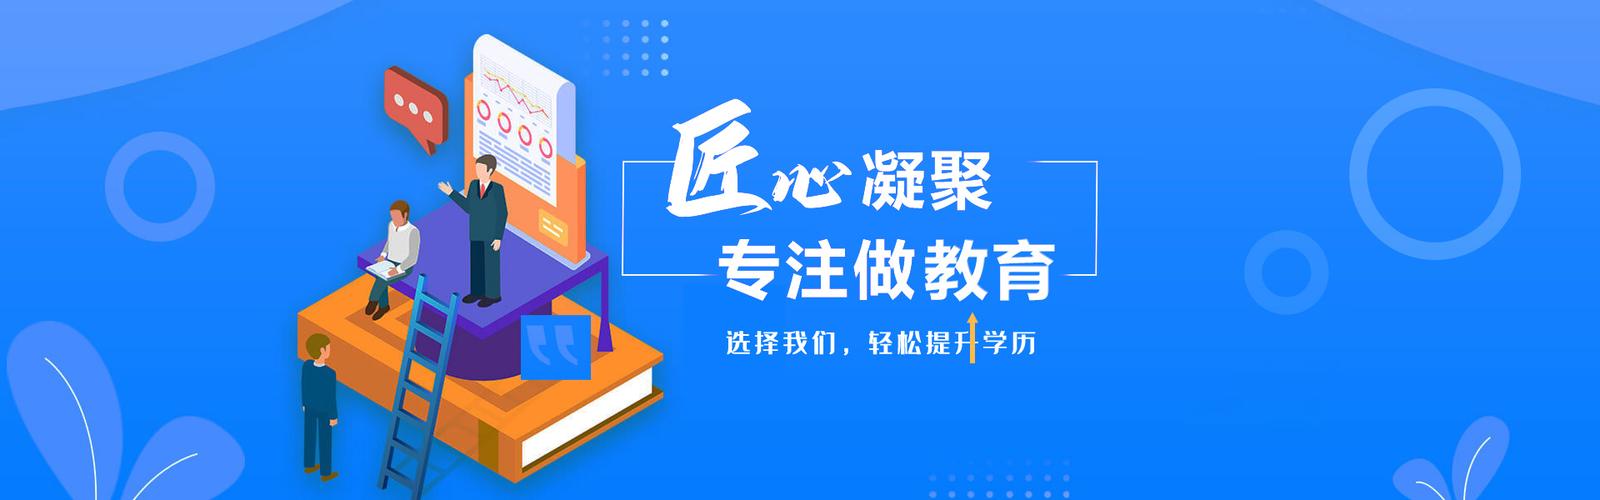 重庆书香苑教育信息咨询服务